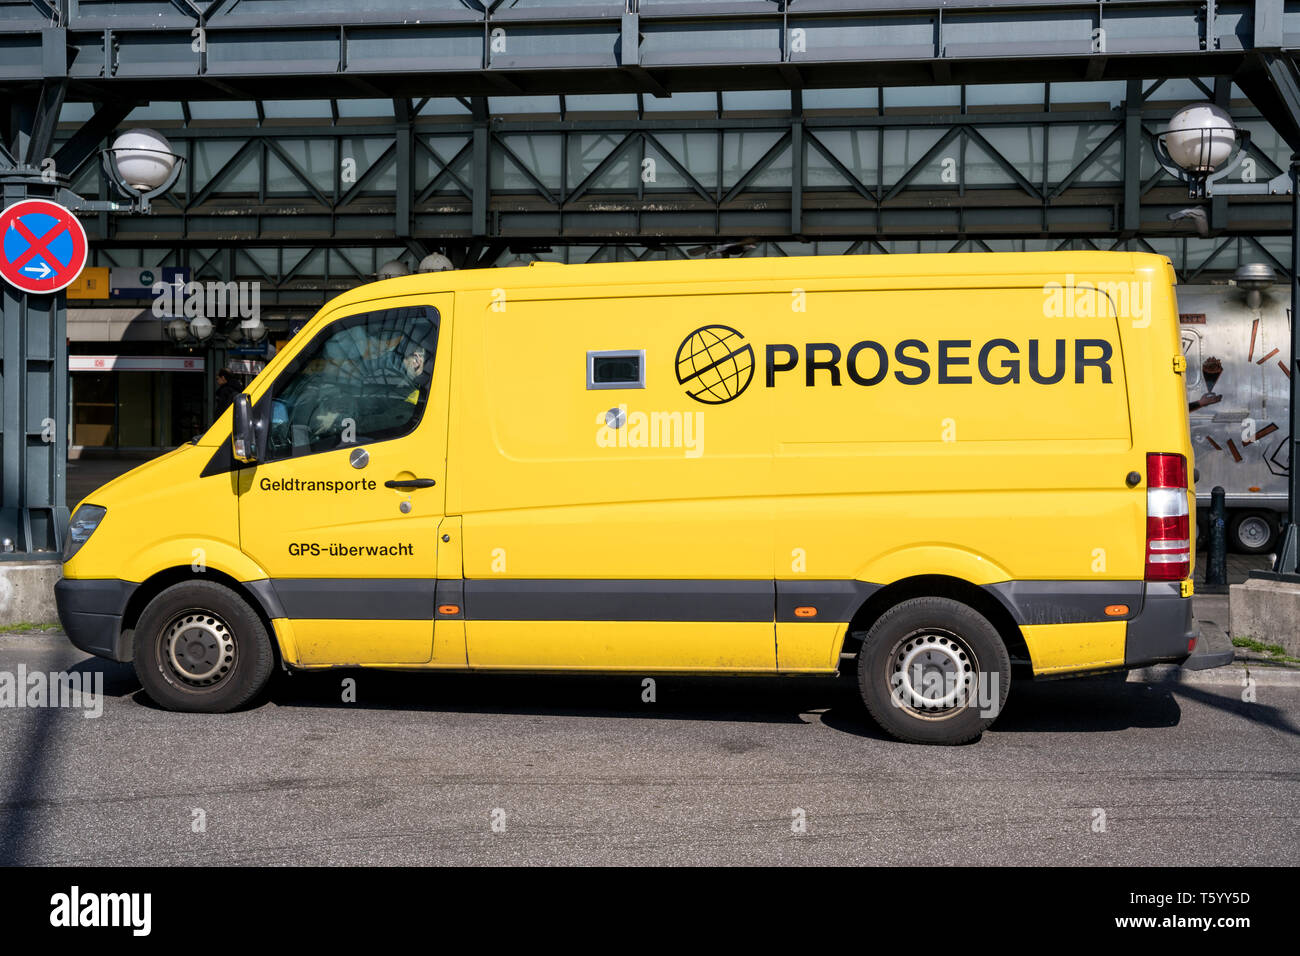 Sécurité Prosegur van. Prosegur est une société de sécurité, basé à Madrid,  Espagne Photo Stock - Alamy